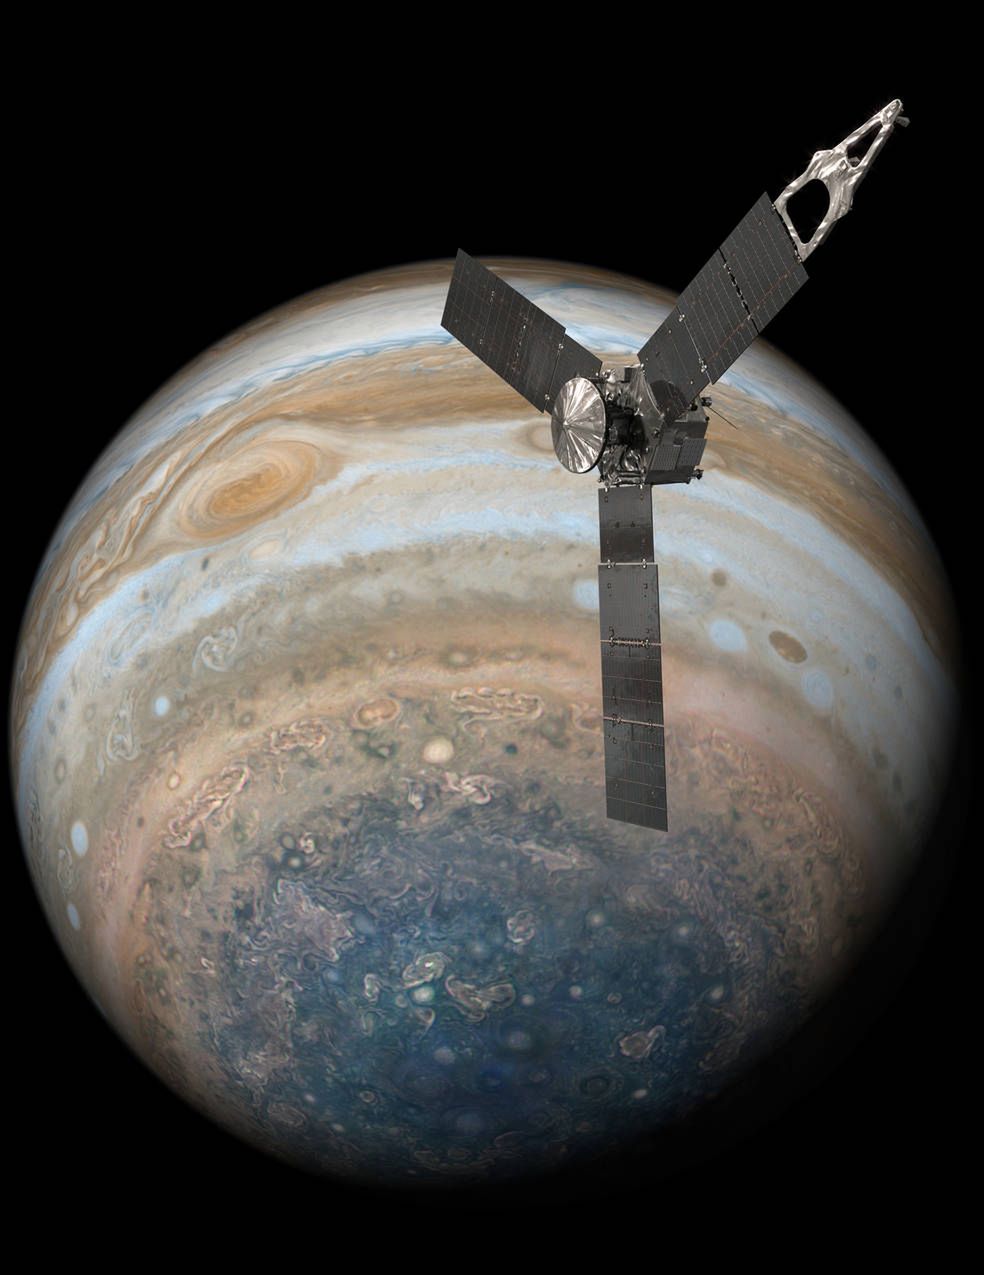 Ósmy przelot sondy Juno nad Jowiszem zaowocował genialnym zdjęciem